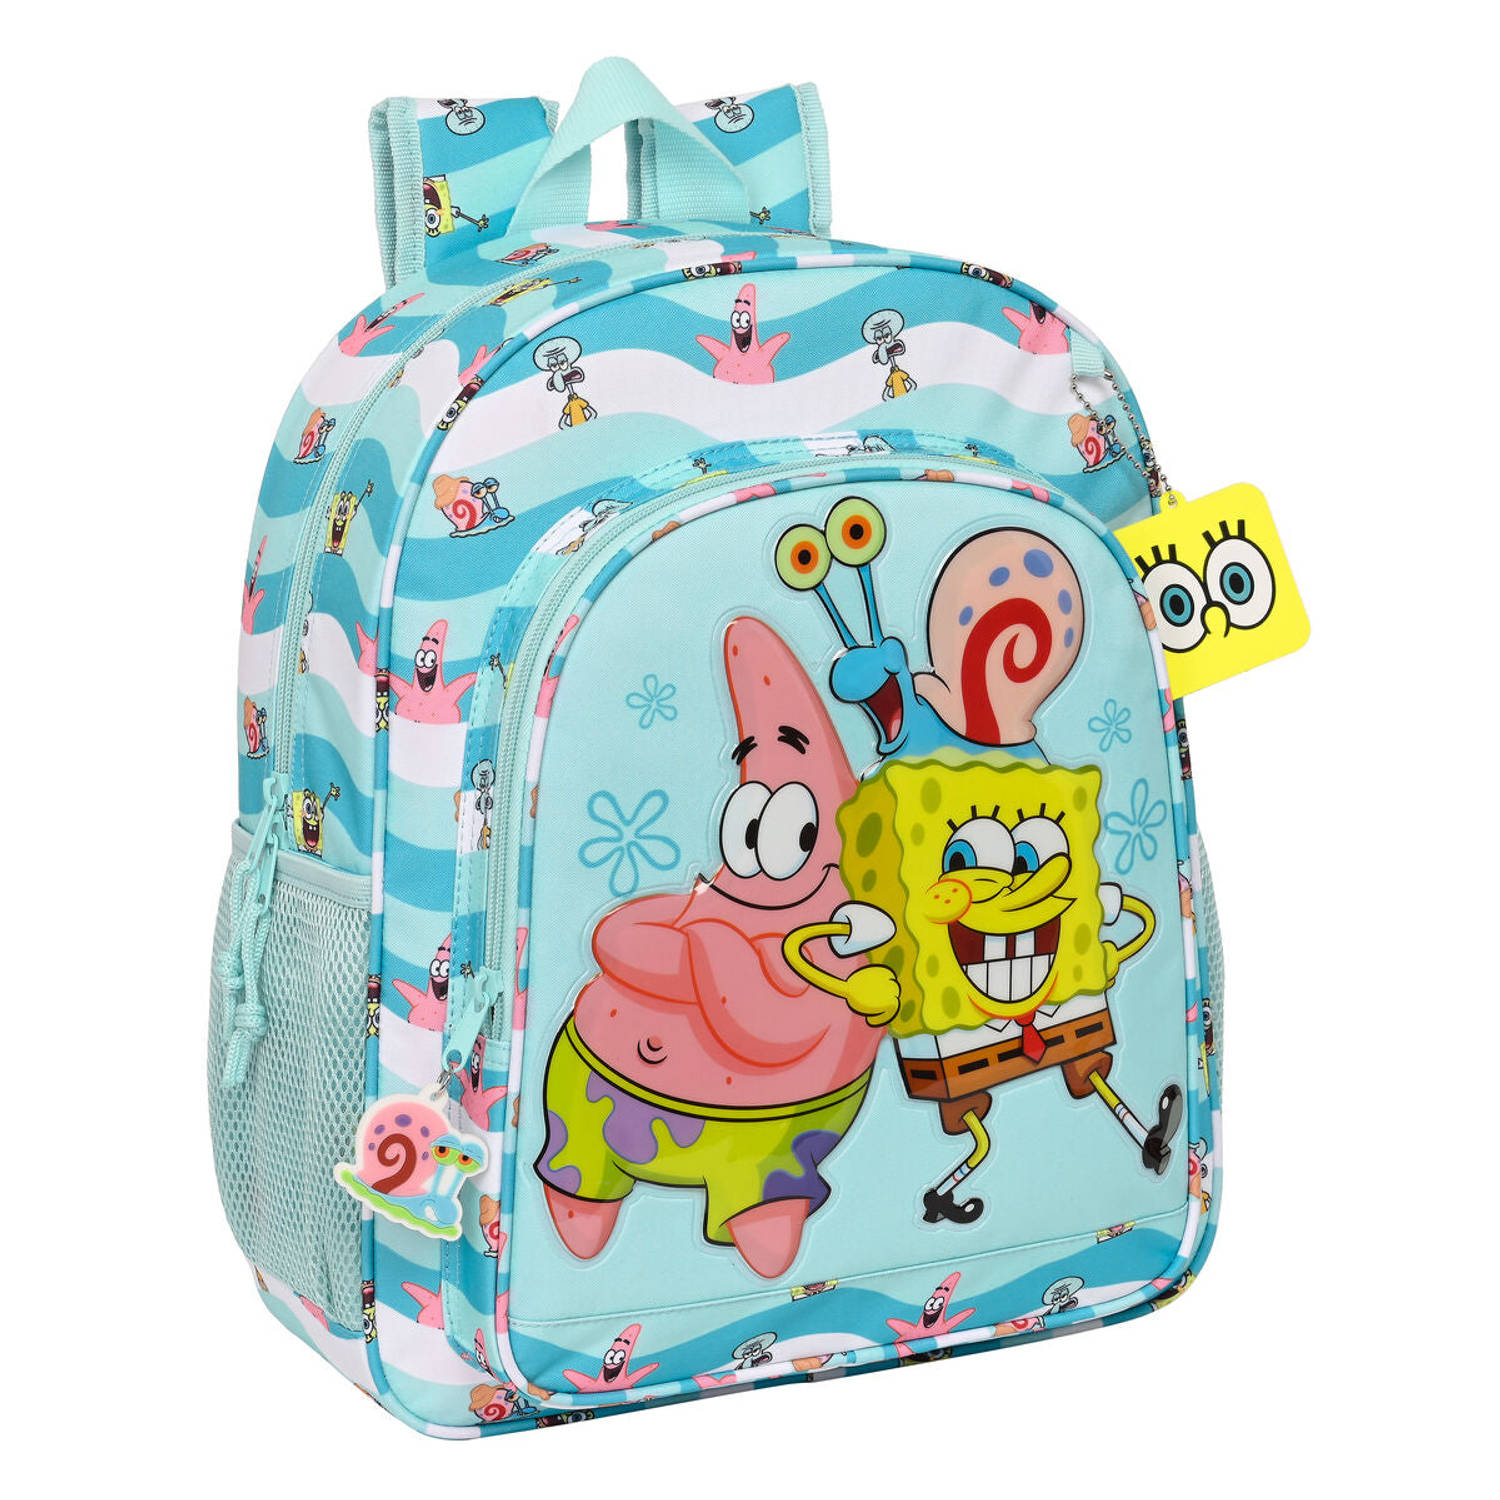 Schoolrugzak Spongebob Stay positive Blauw Wit (32 x 38 x 12 cm)